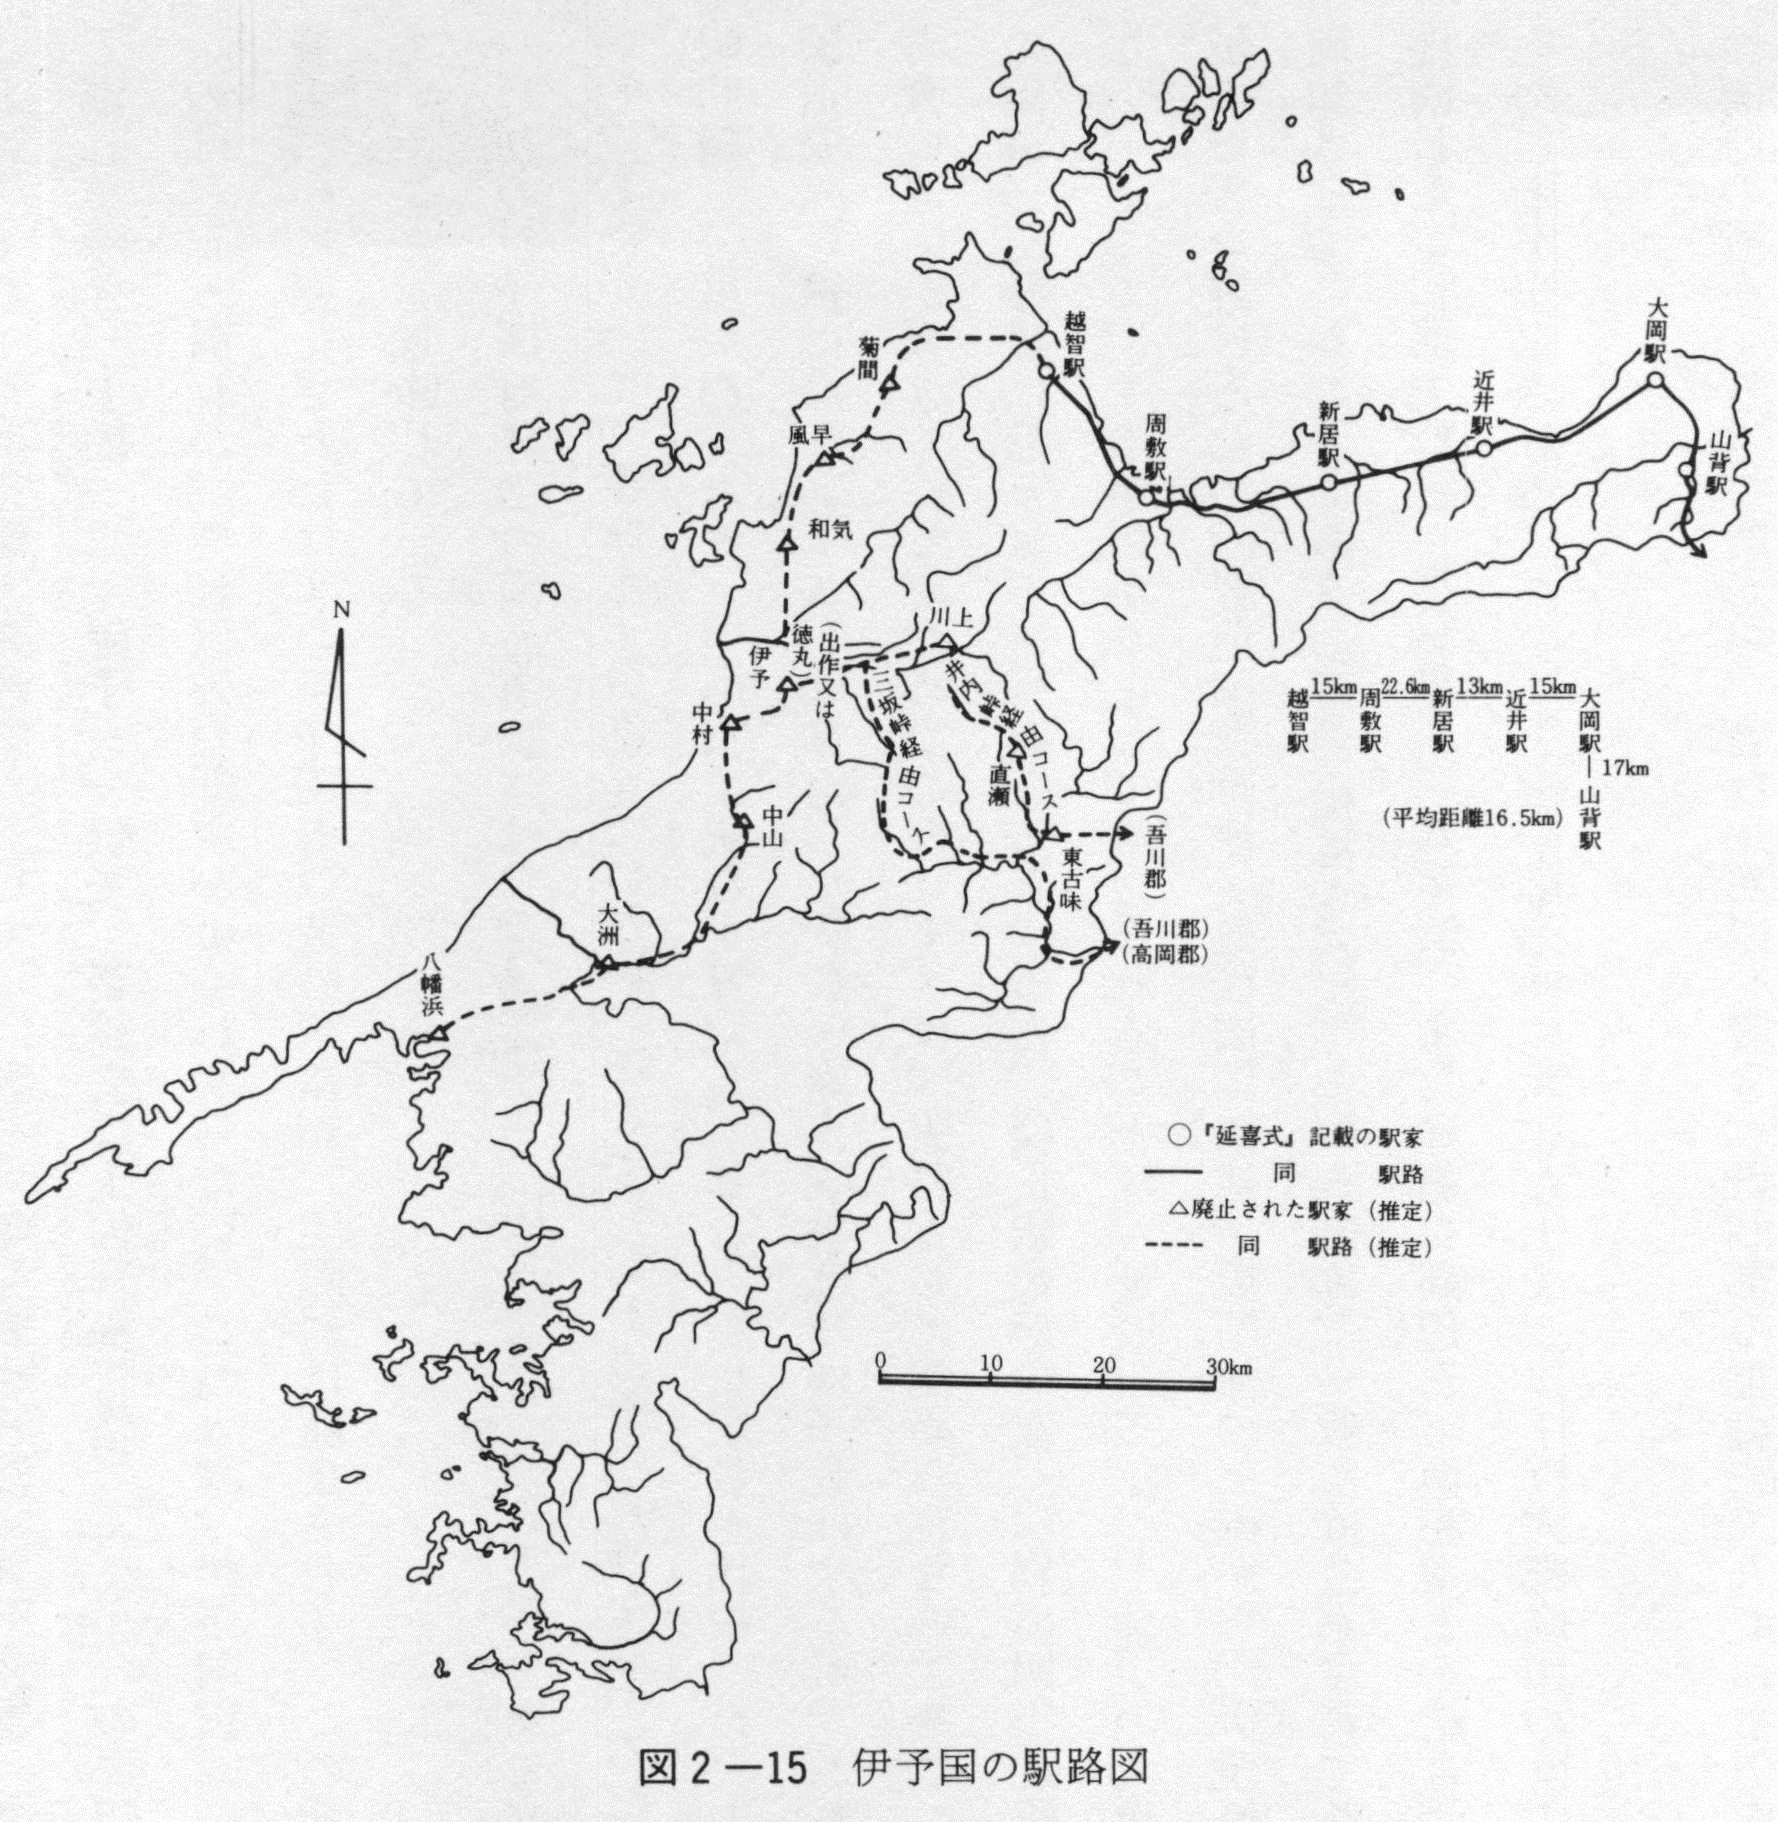 図2-15　伊予国の駅路図